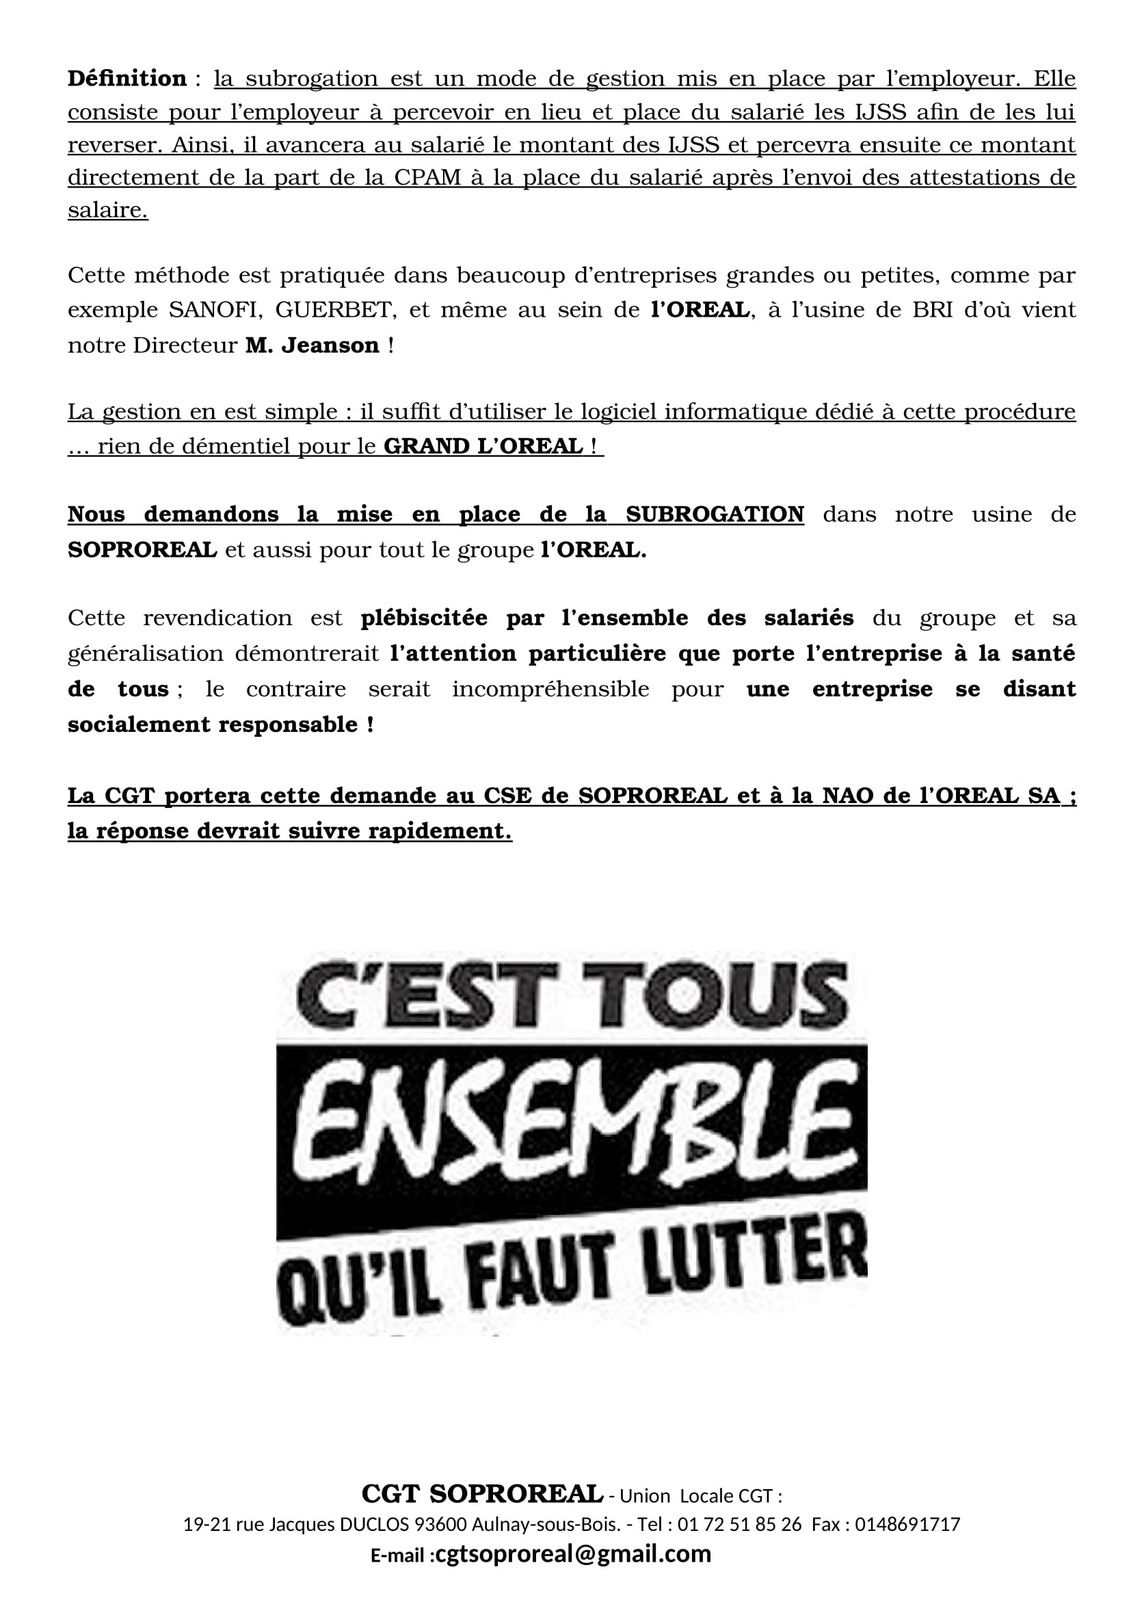 La CGT Soproreal d’Aulnay-sous-Bois demande la subrogation pour le groupe l’Oréal